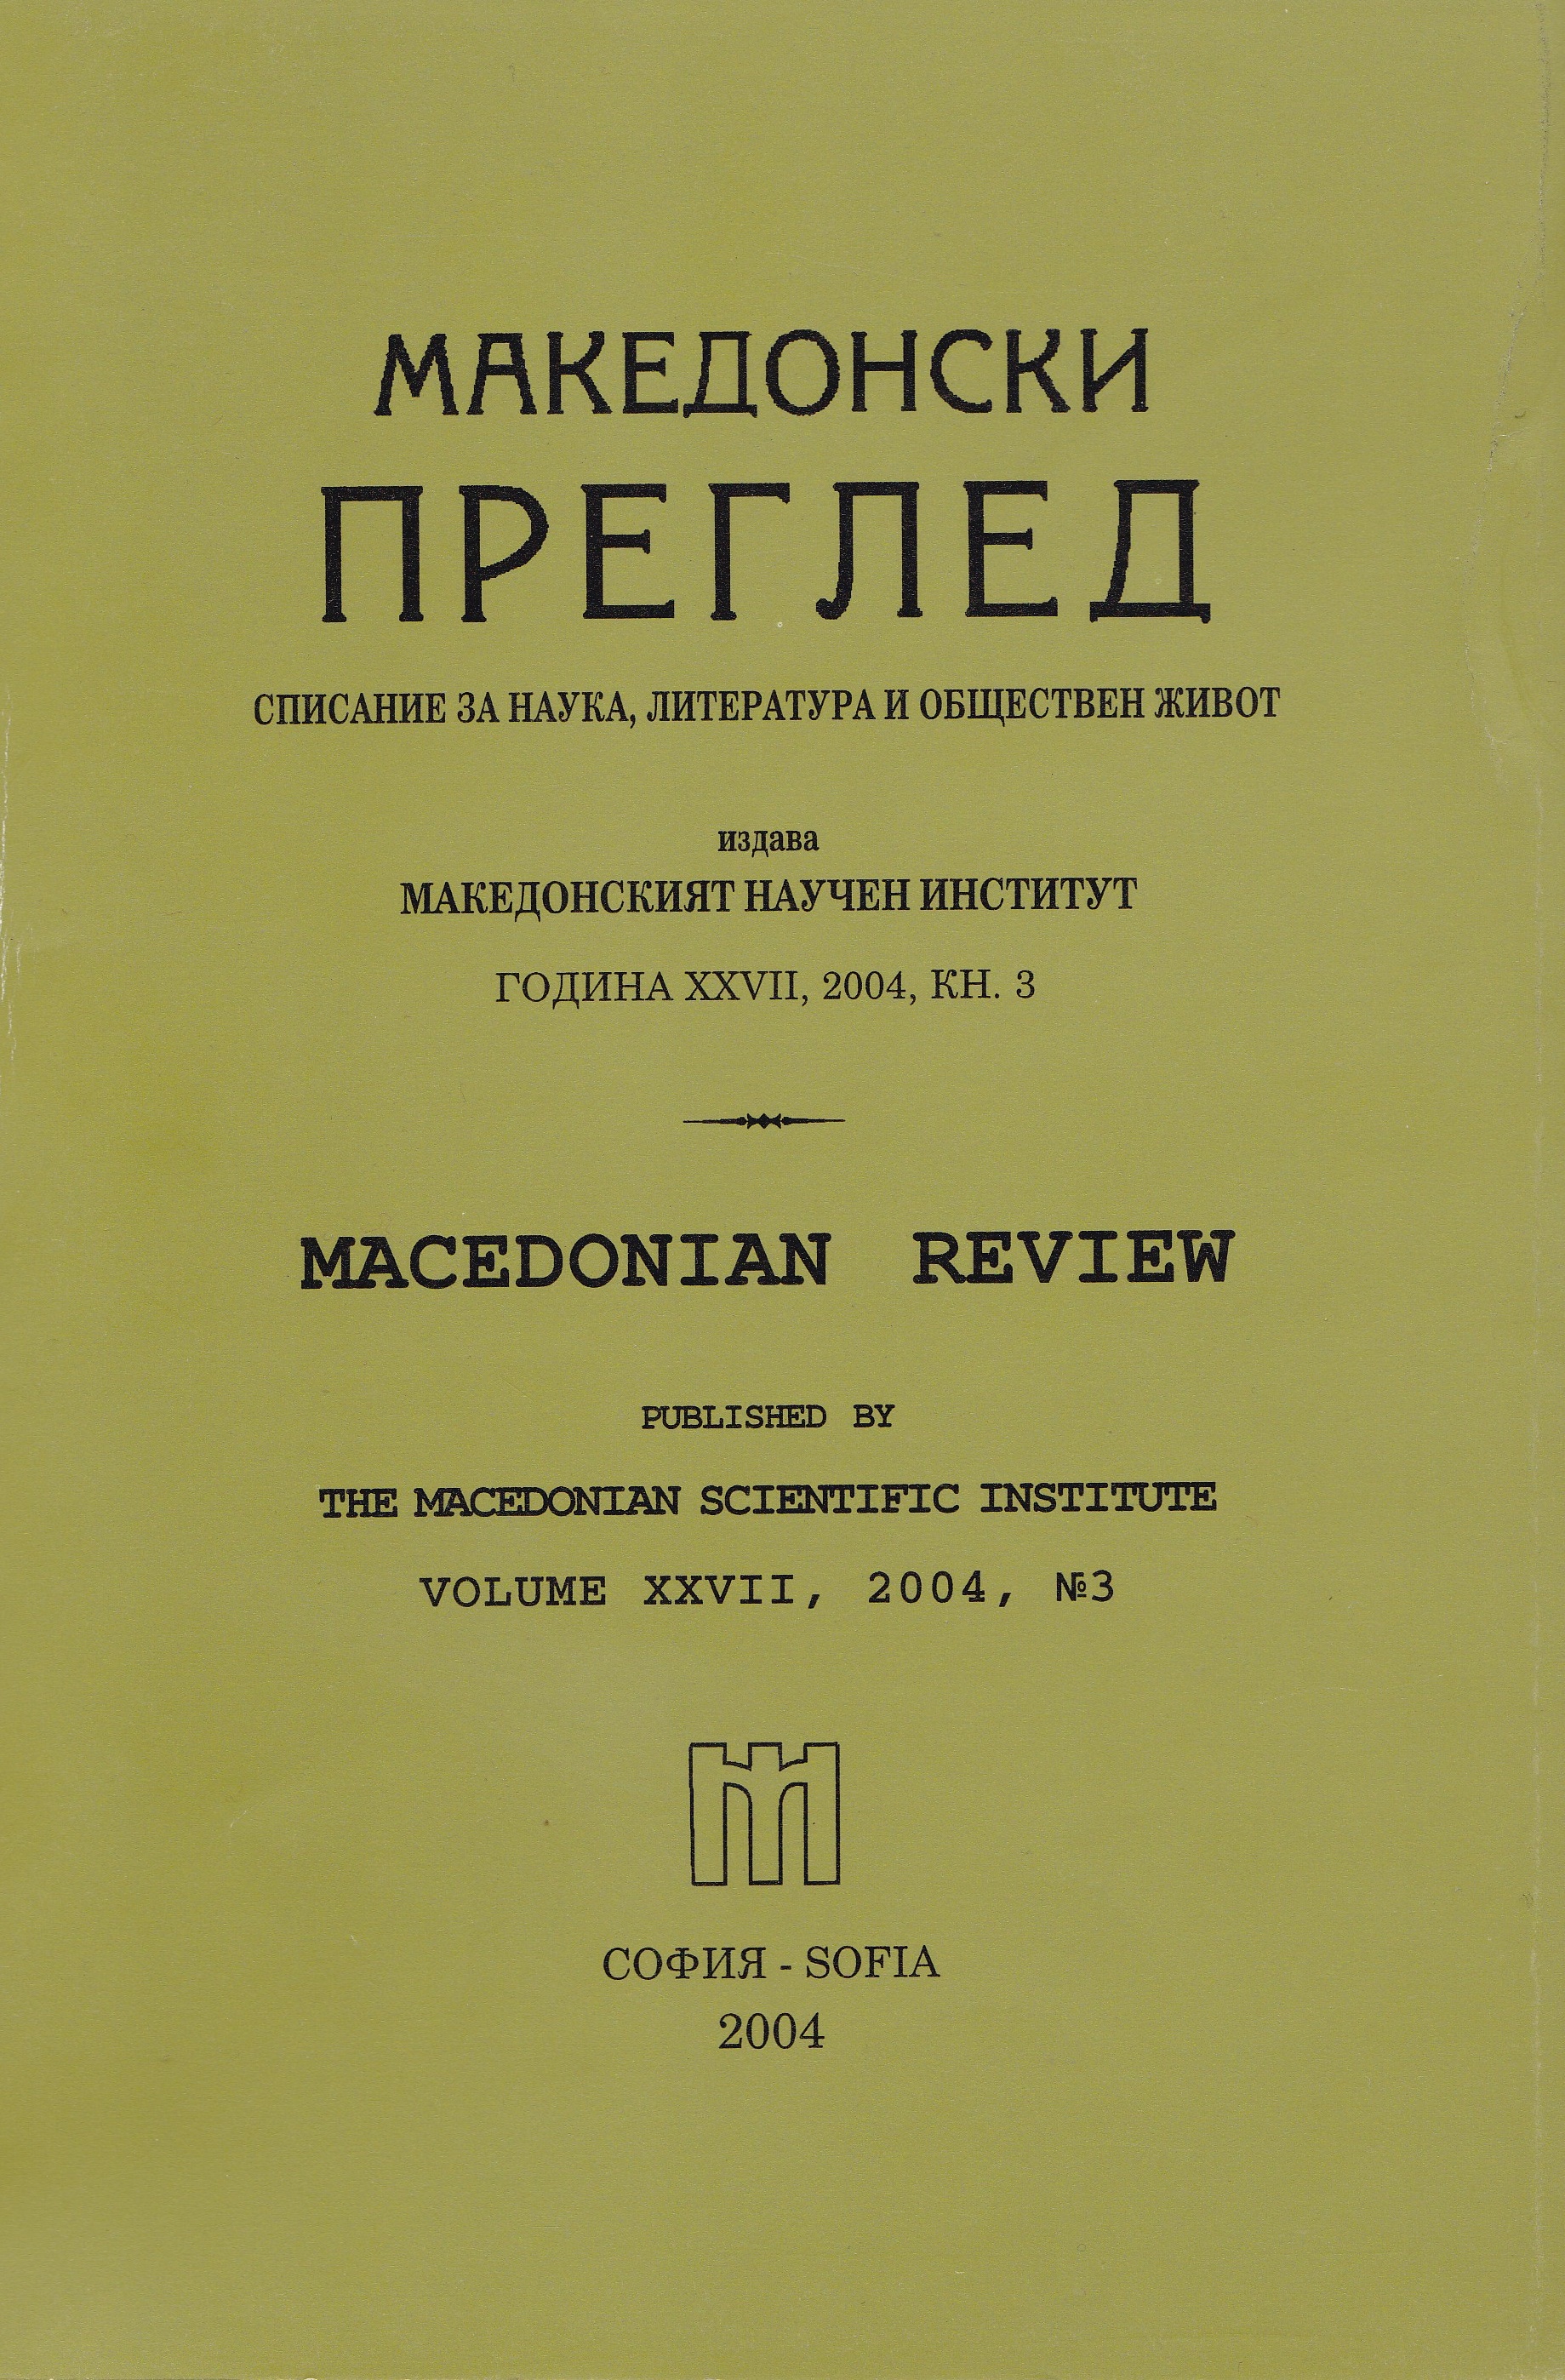 Todor Dimitrov, Region of Kyustendil - chief rebel's base for Macedonia 1985-1912, Kyustendil. 2004, 97 p. Review by Vasilka Stoykova Cover Image